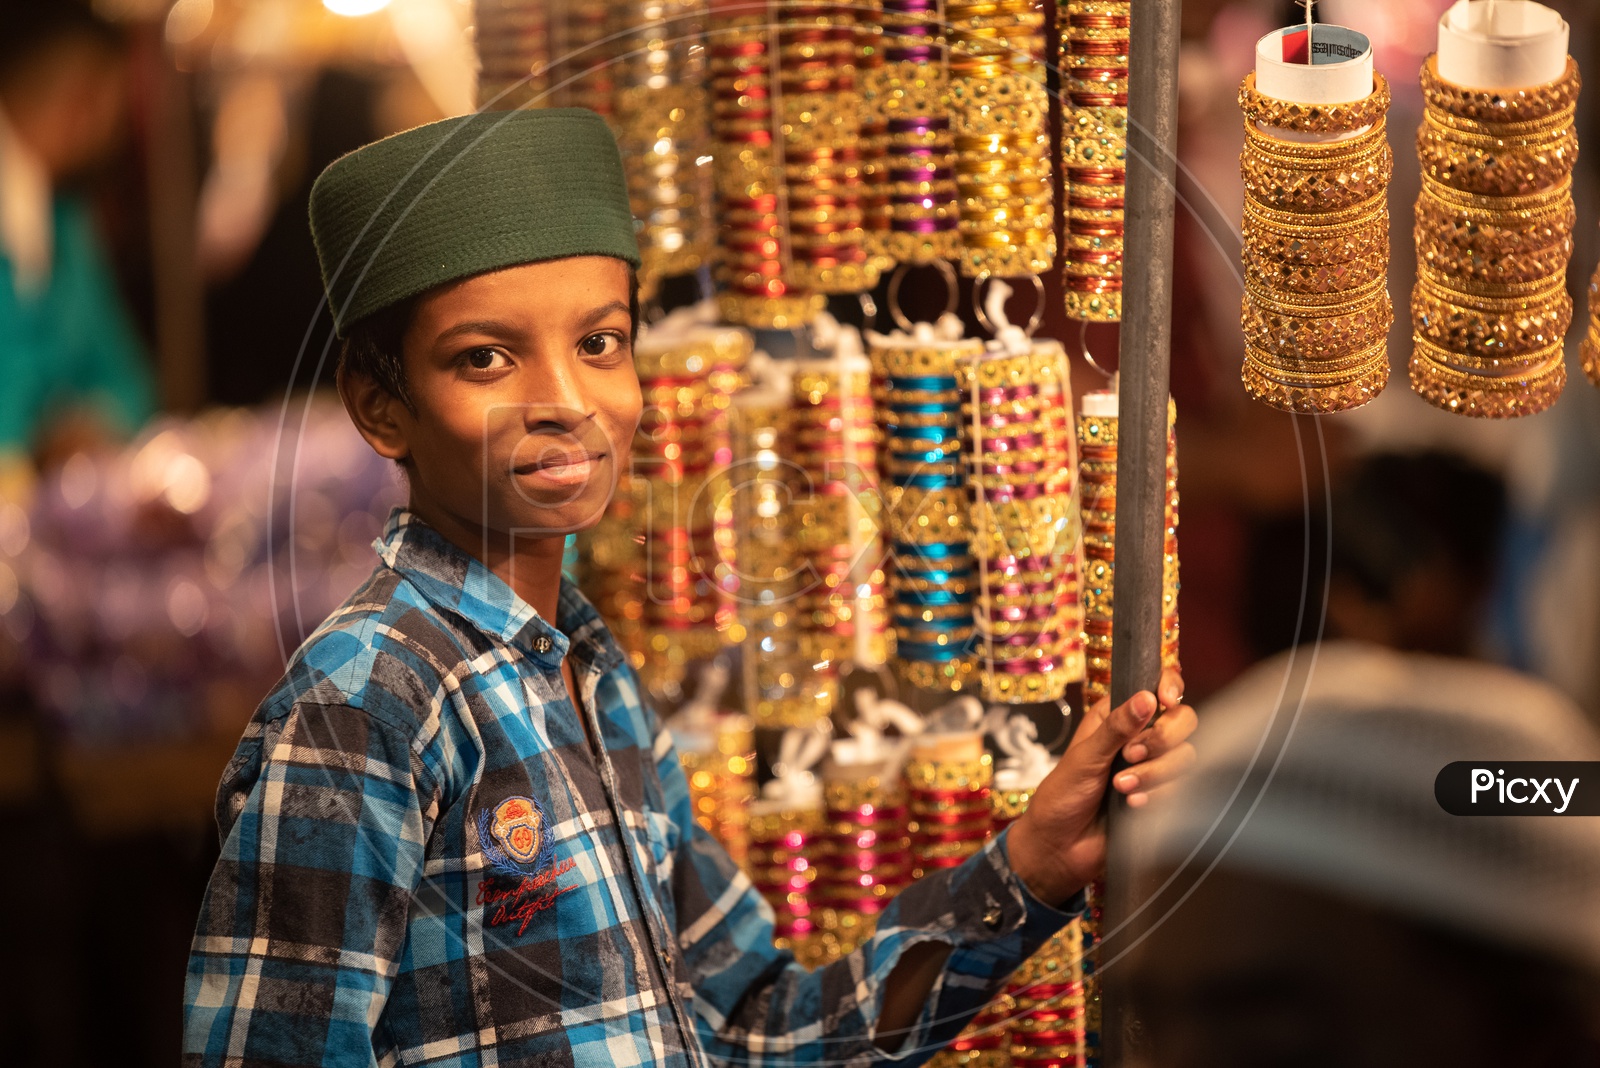 A Boy Working as a  Vendor  in a  Bangles Vending   Stall  Around Charminar  During Ramadan Or Ramzan Season